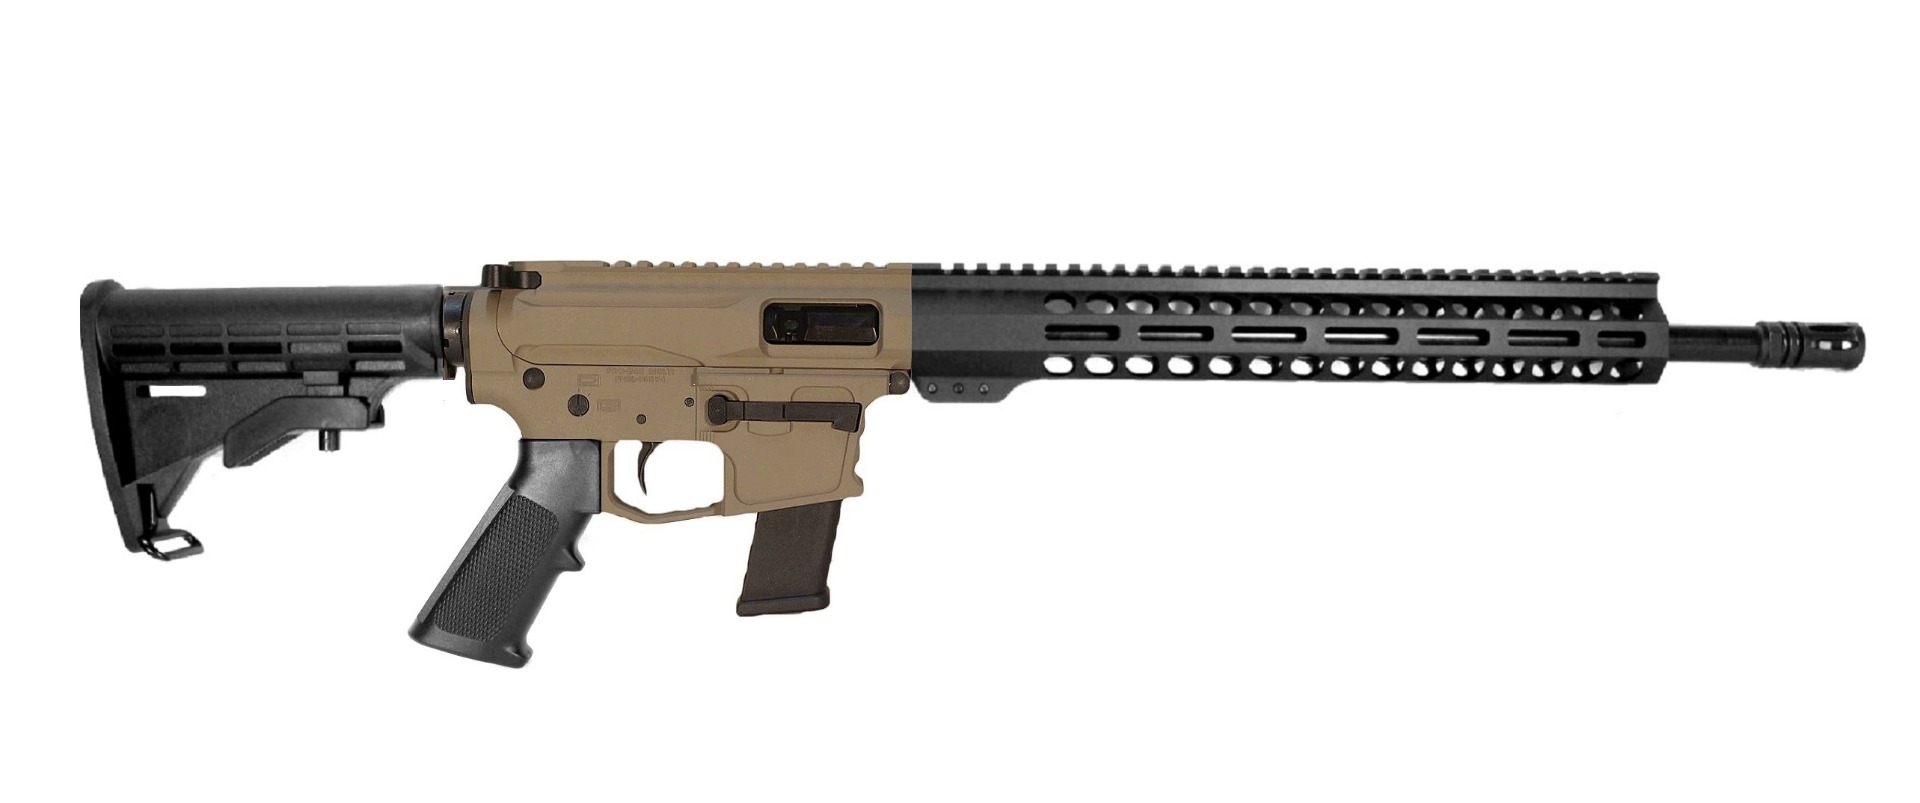 16 inch 45 ACP AR Rifle FDE/BLK 2 Tone 